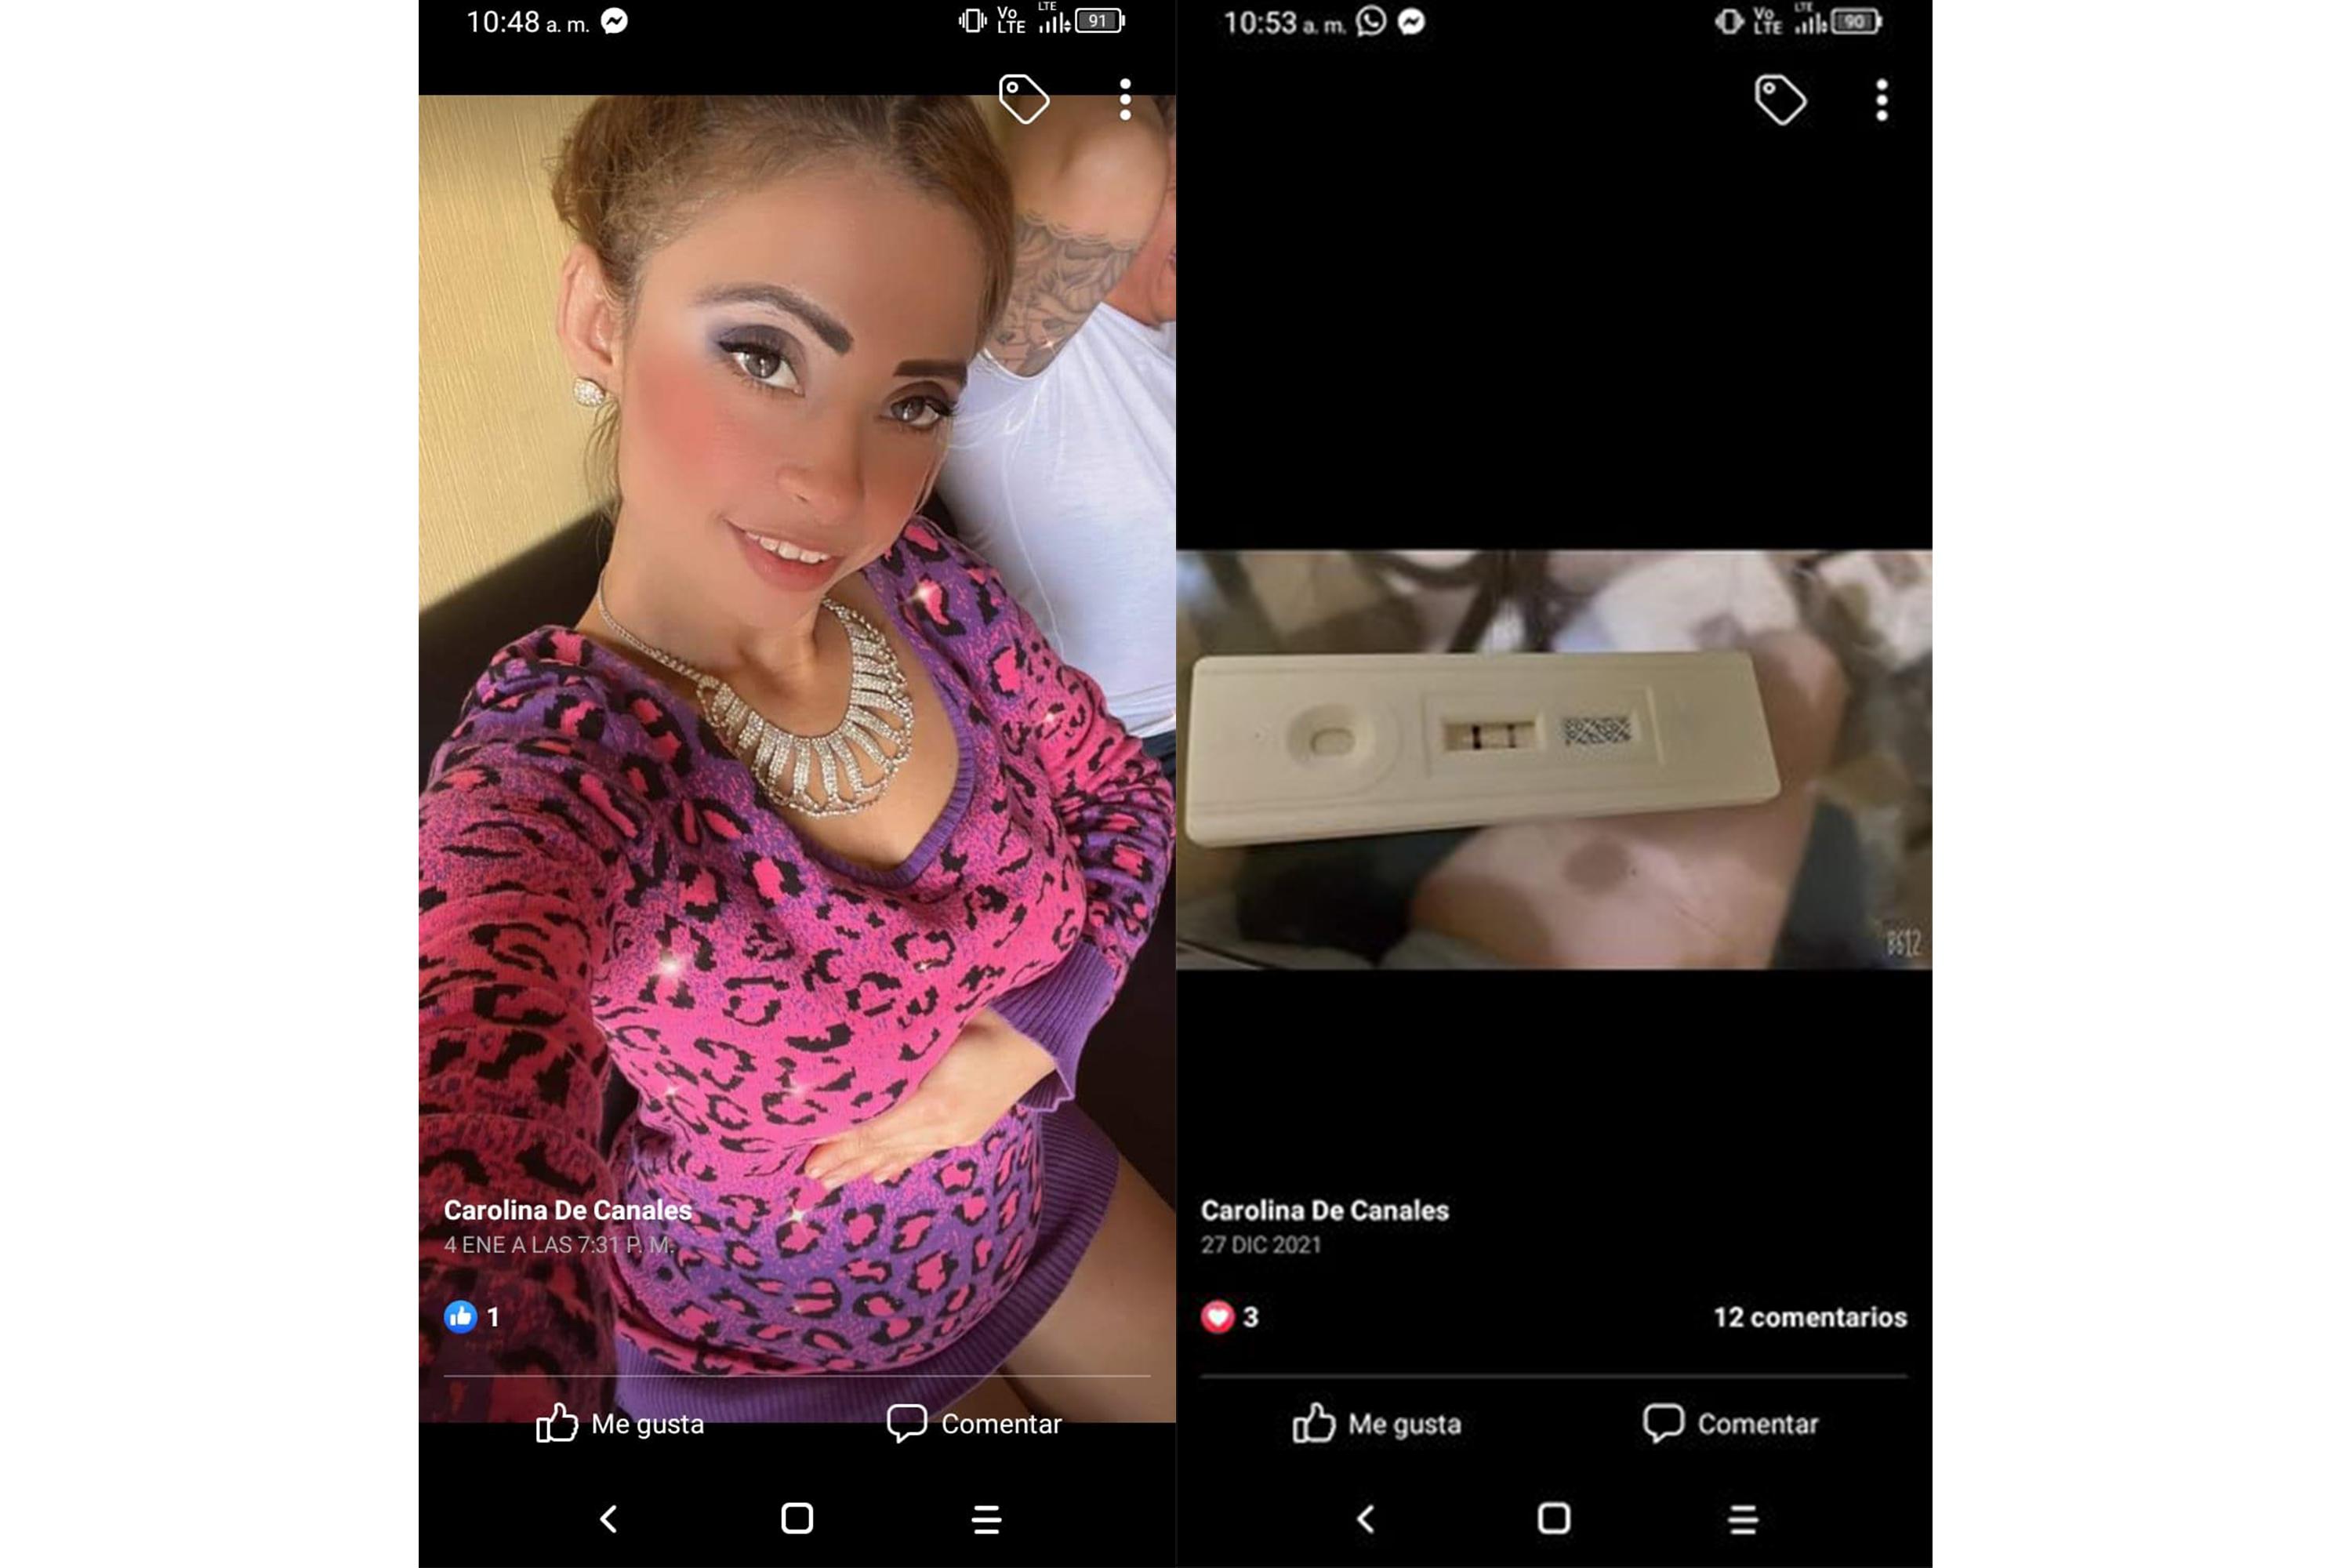 Yesi Chávez compartió el 27 de diciembre de 2021 por Facebook una prueba rápida de embarazo marca HGC con resultado positivo. Ocho días más tarde publicó una foto acentuando su aparente vientre abultado, cuando estaba sentada al lado de Crook, a quien se pudo identificar por los tatuajes que lleva en el brazo.